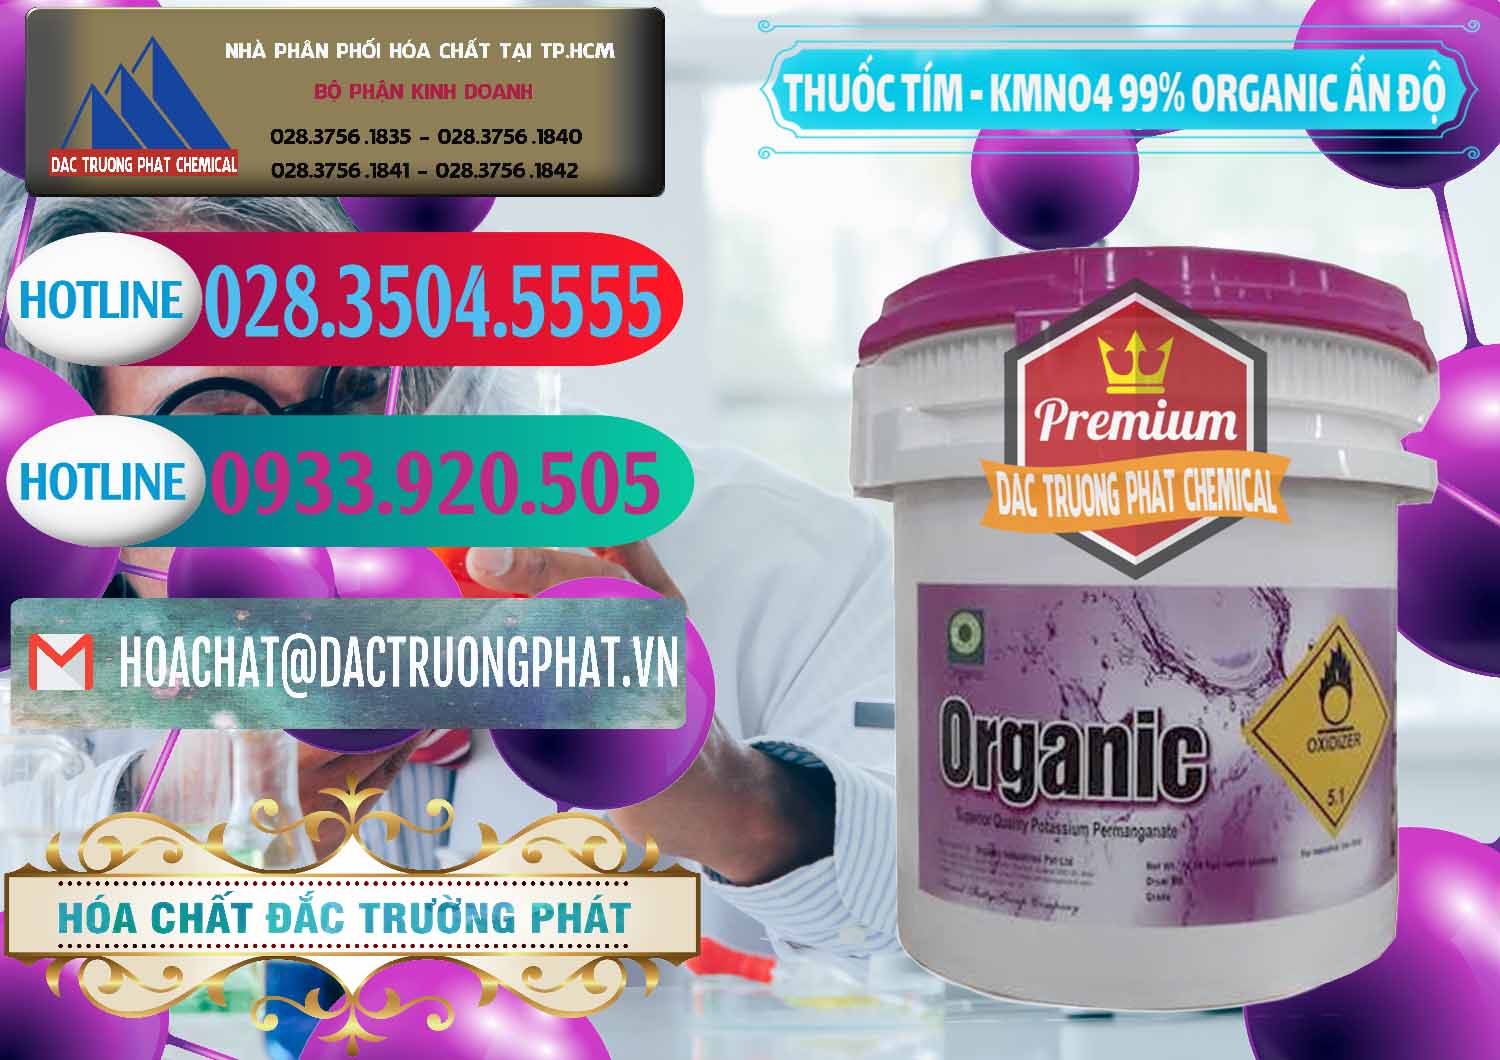 Phân phối & bán Thuốc Tím - KMNO4 99% Organic Ấn Độ India - 0216 - Chuyên cung cấp và kinh doanh hóa chất tại TP.HCM - truongphat.vn